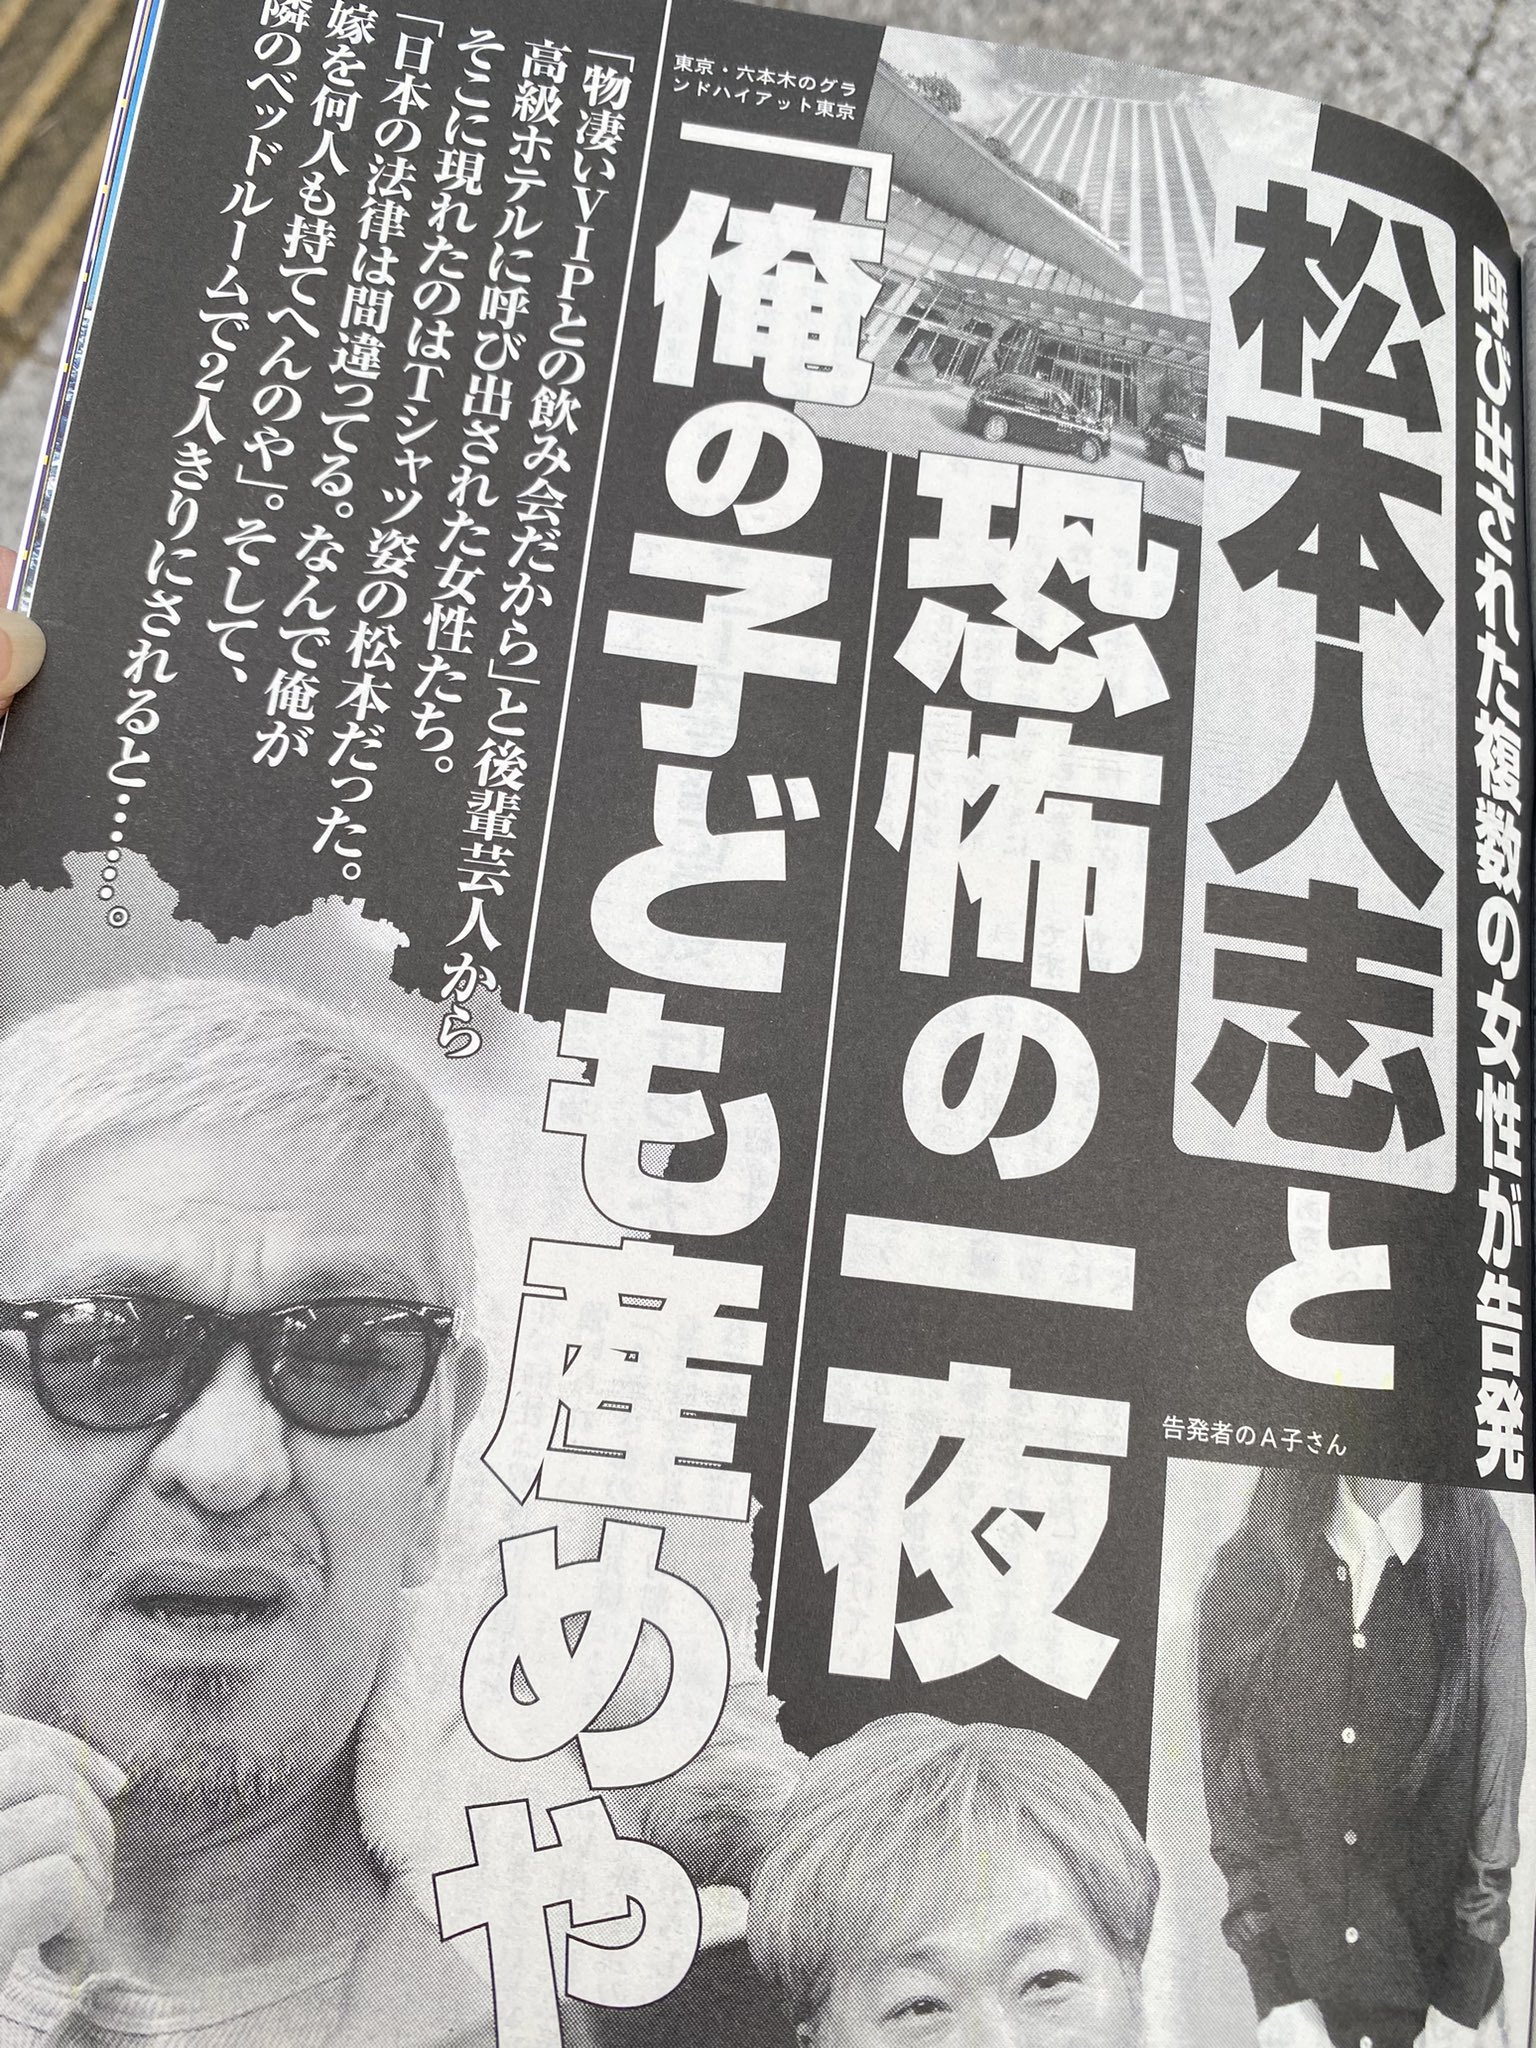 松本人志さんの週刊文春報道を霊視（チャネリング）してみました。